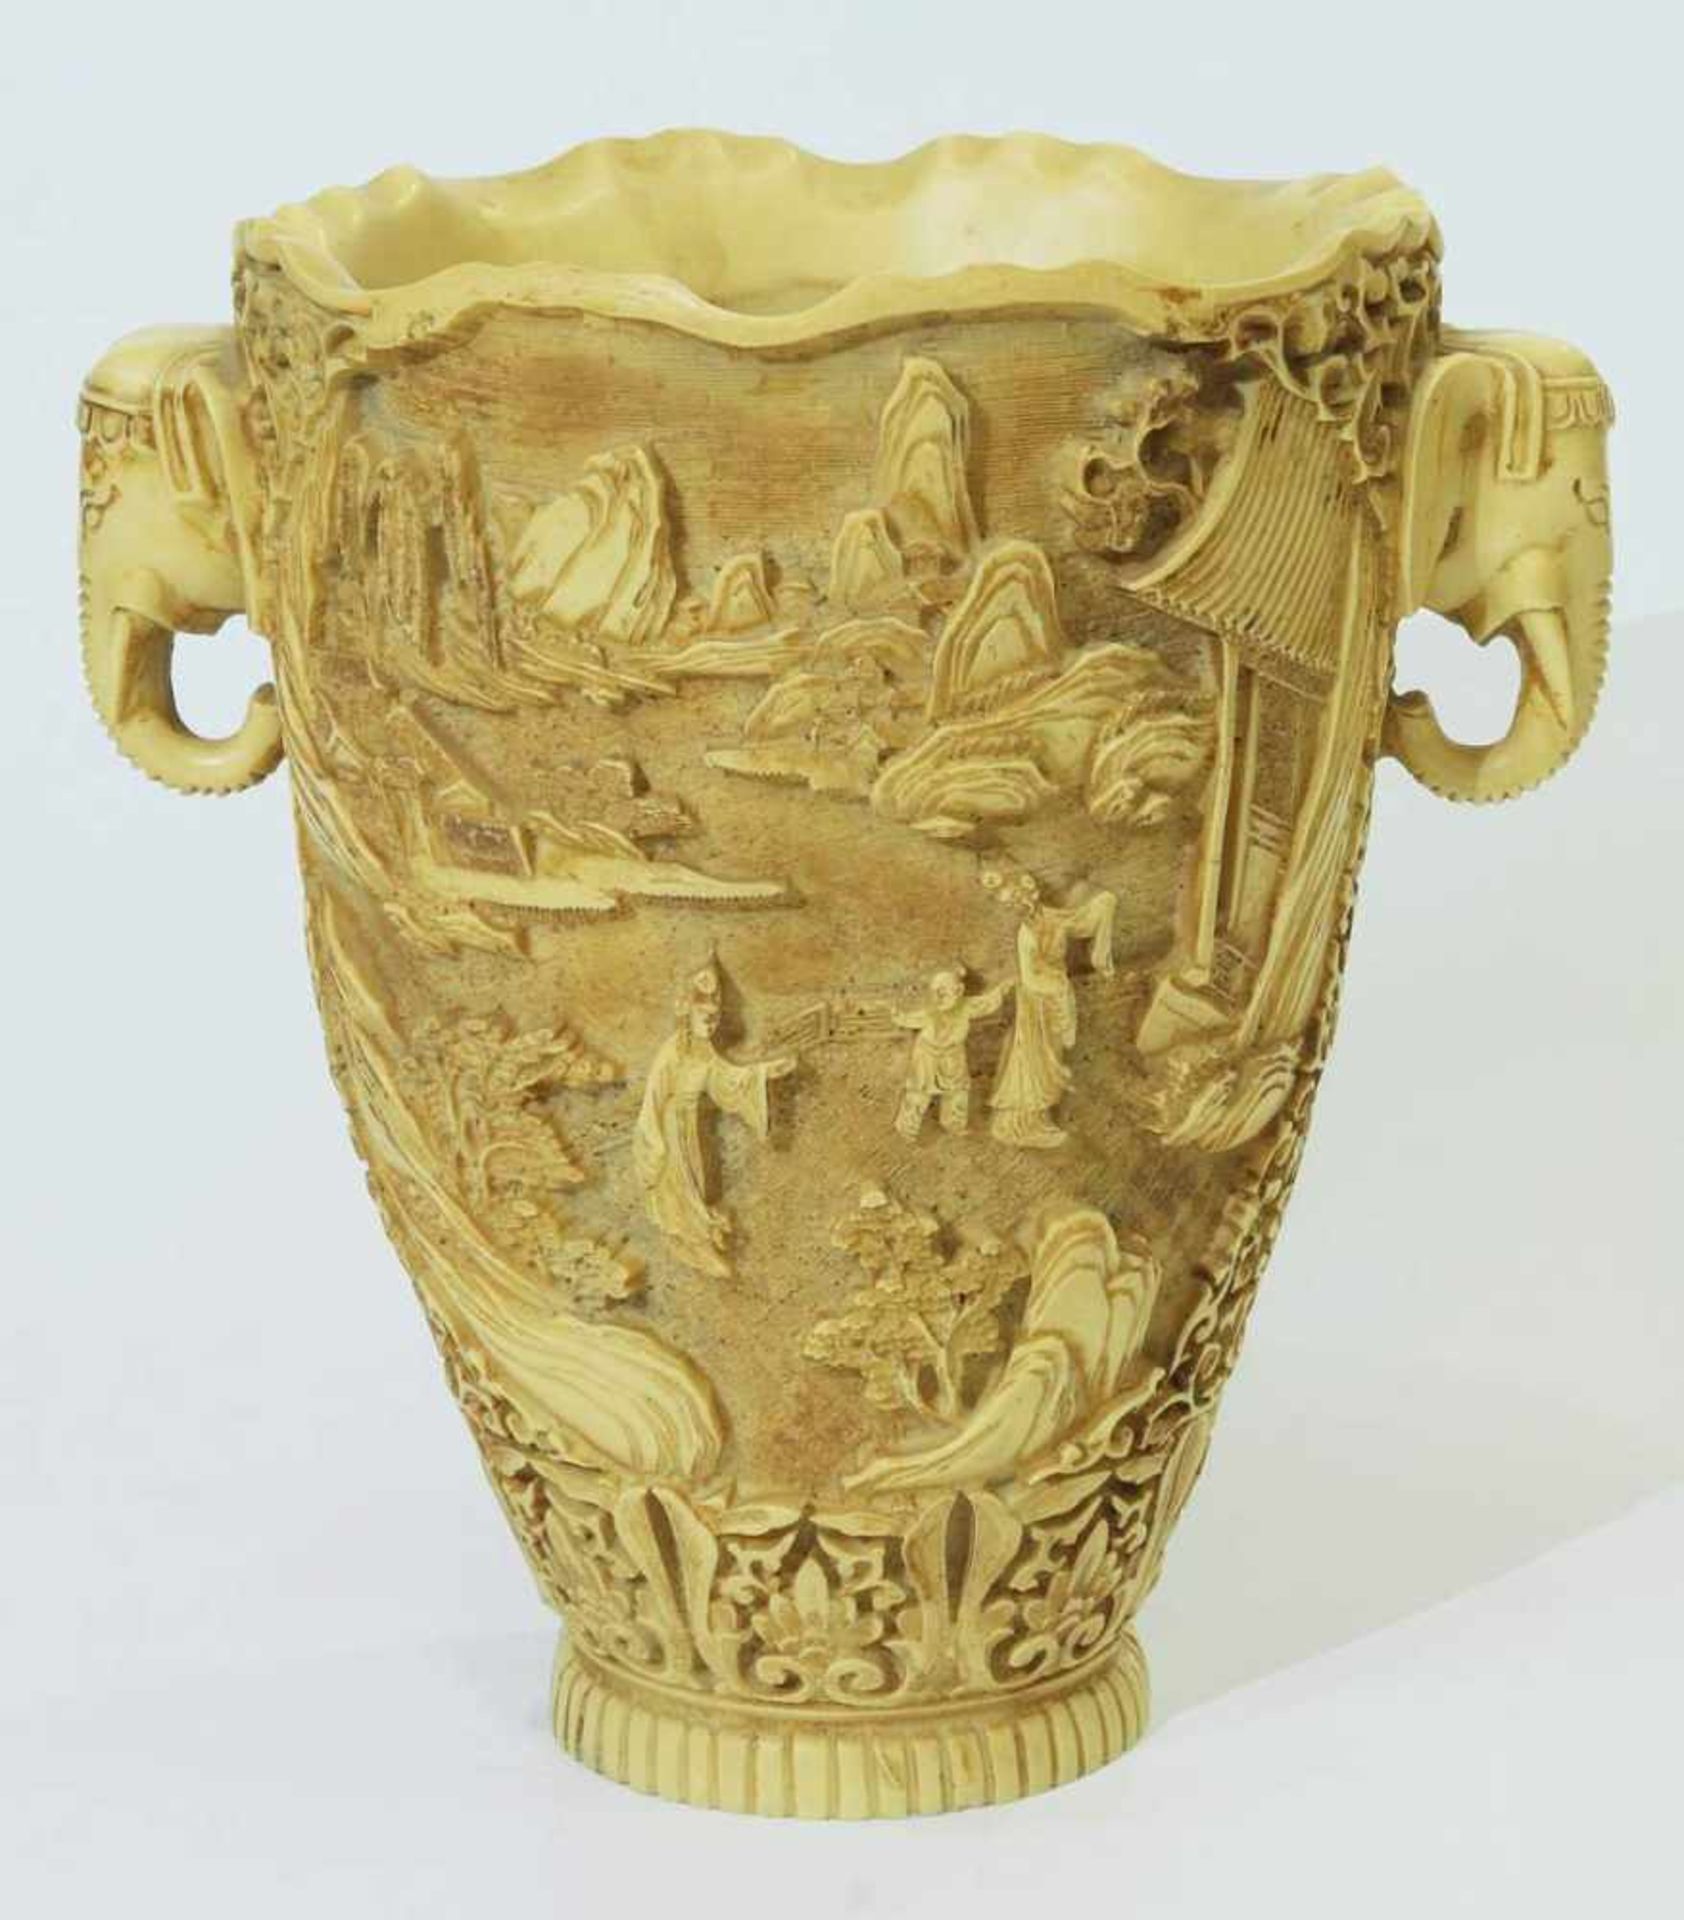 Vase mit Elefantenkopf-Handhaben. Vase mit Elefantenkopf-Handhaben. Asien, 20. Jahrhundert. - Bild 2 aus 6